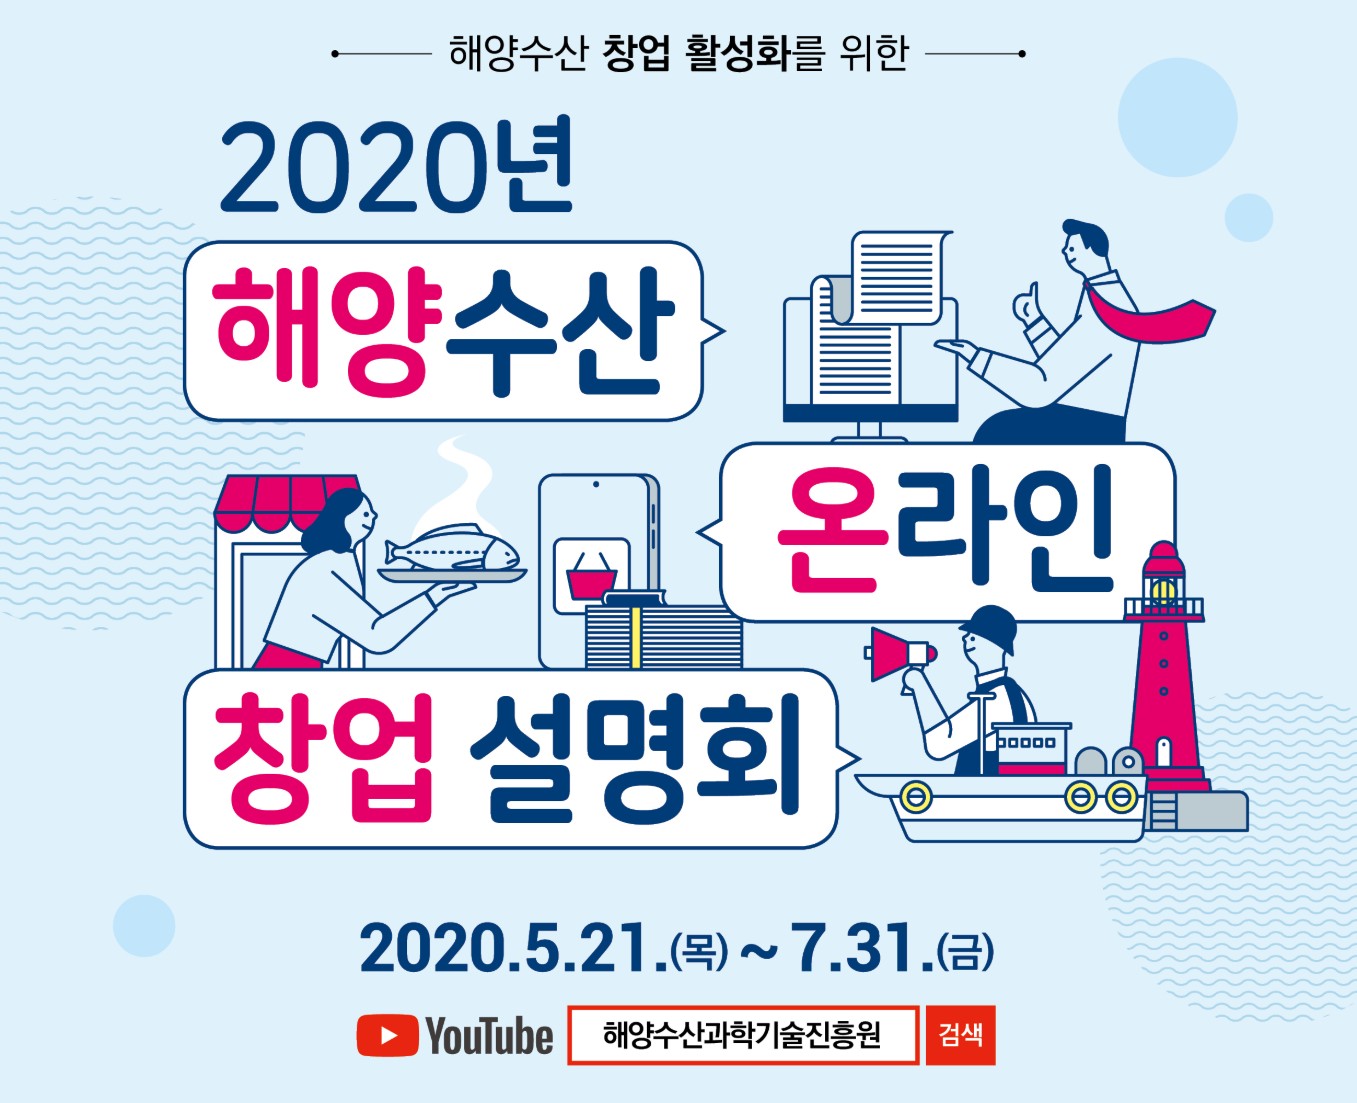 해수부, ‘2020년 해양수산 온라인 창업설명회’로 해양수산 분야 온라인 창업 지원